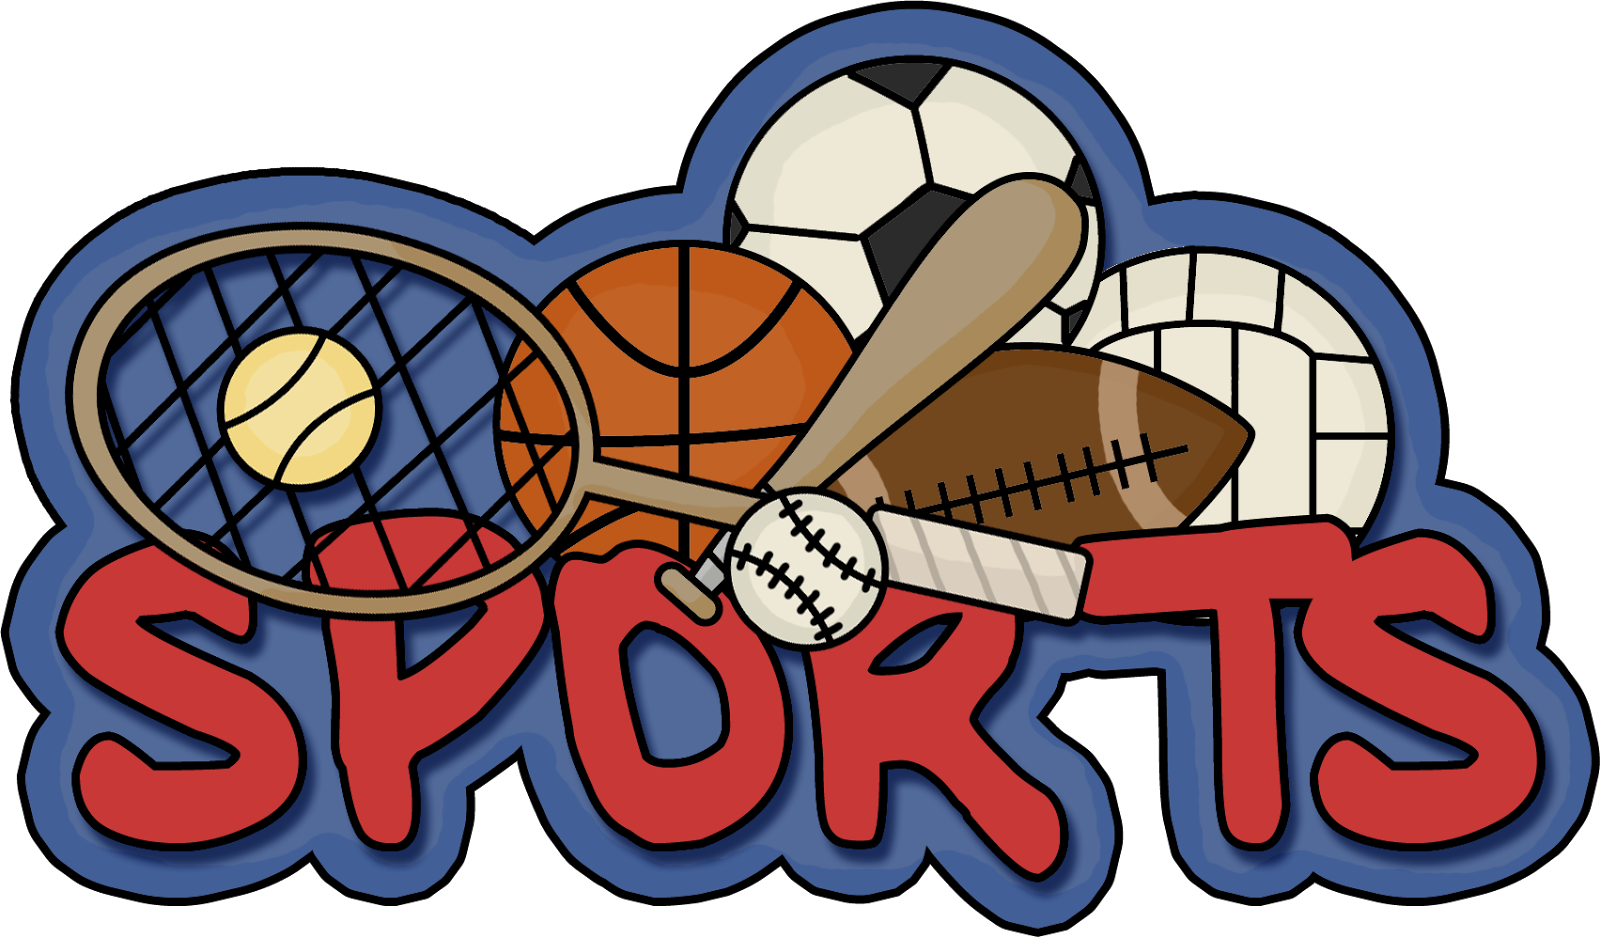 Sport and games we are. Спортивные логотипы. Эмблемы спортивных товаров. Спорт слово. Спорт надпись.